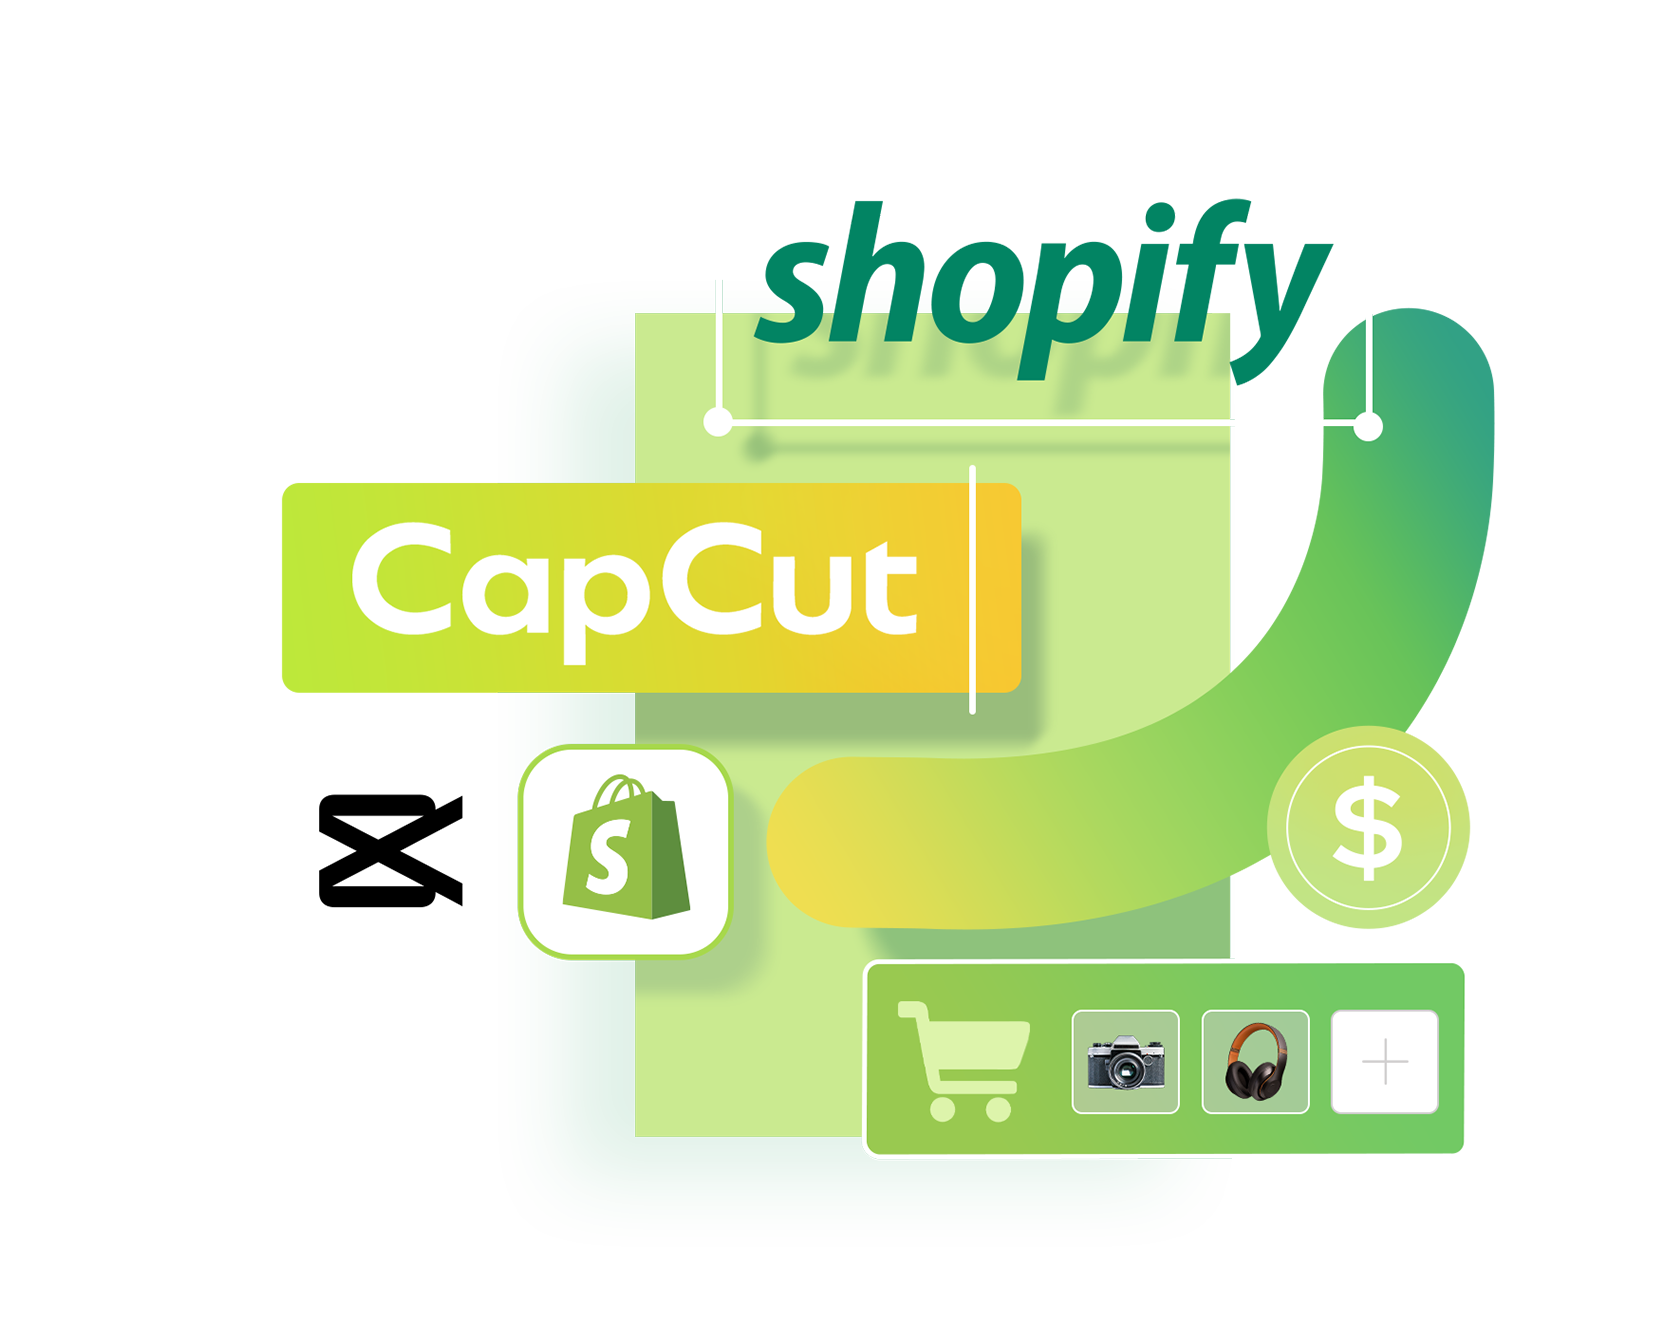 CapCut arbeitet mit Shopify zusammen